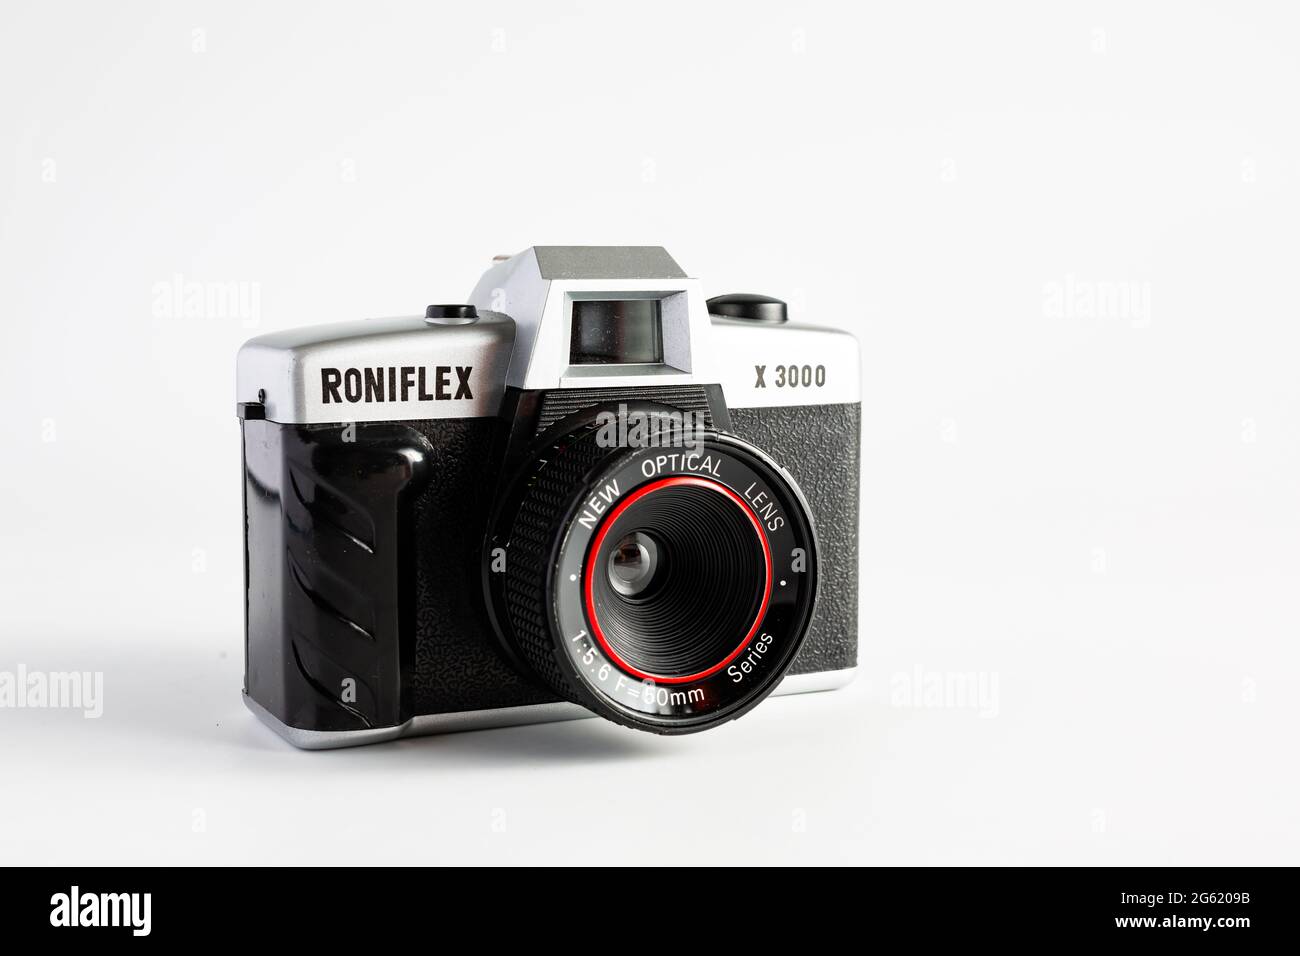 Woodbridge Suffolk UK juin 29 2021: Un classique appareil-photo de film de 35 mm Roniflex X3000 isolé sur fond blanc Banque D'Images